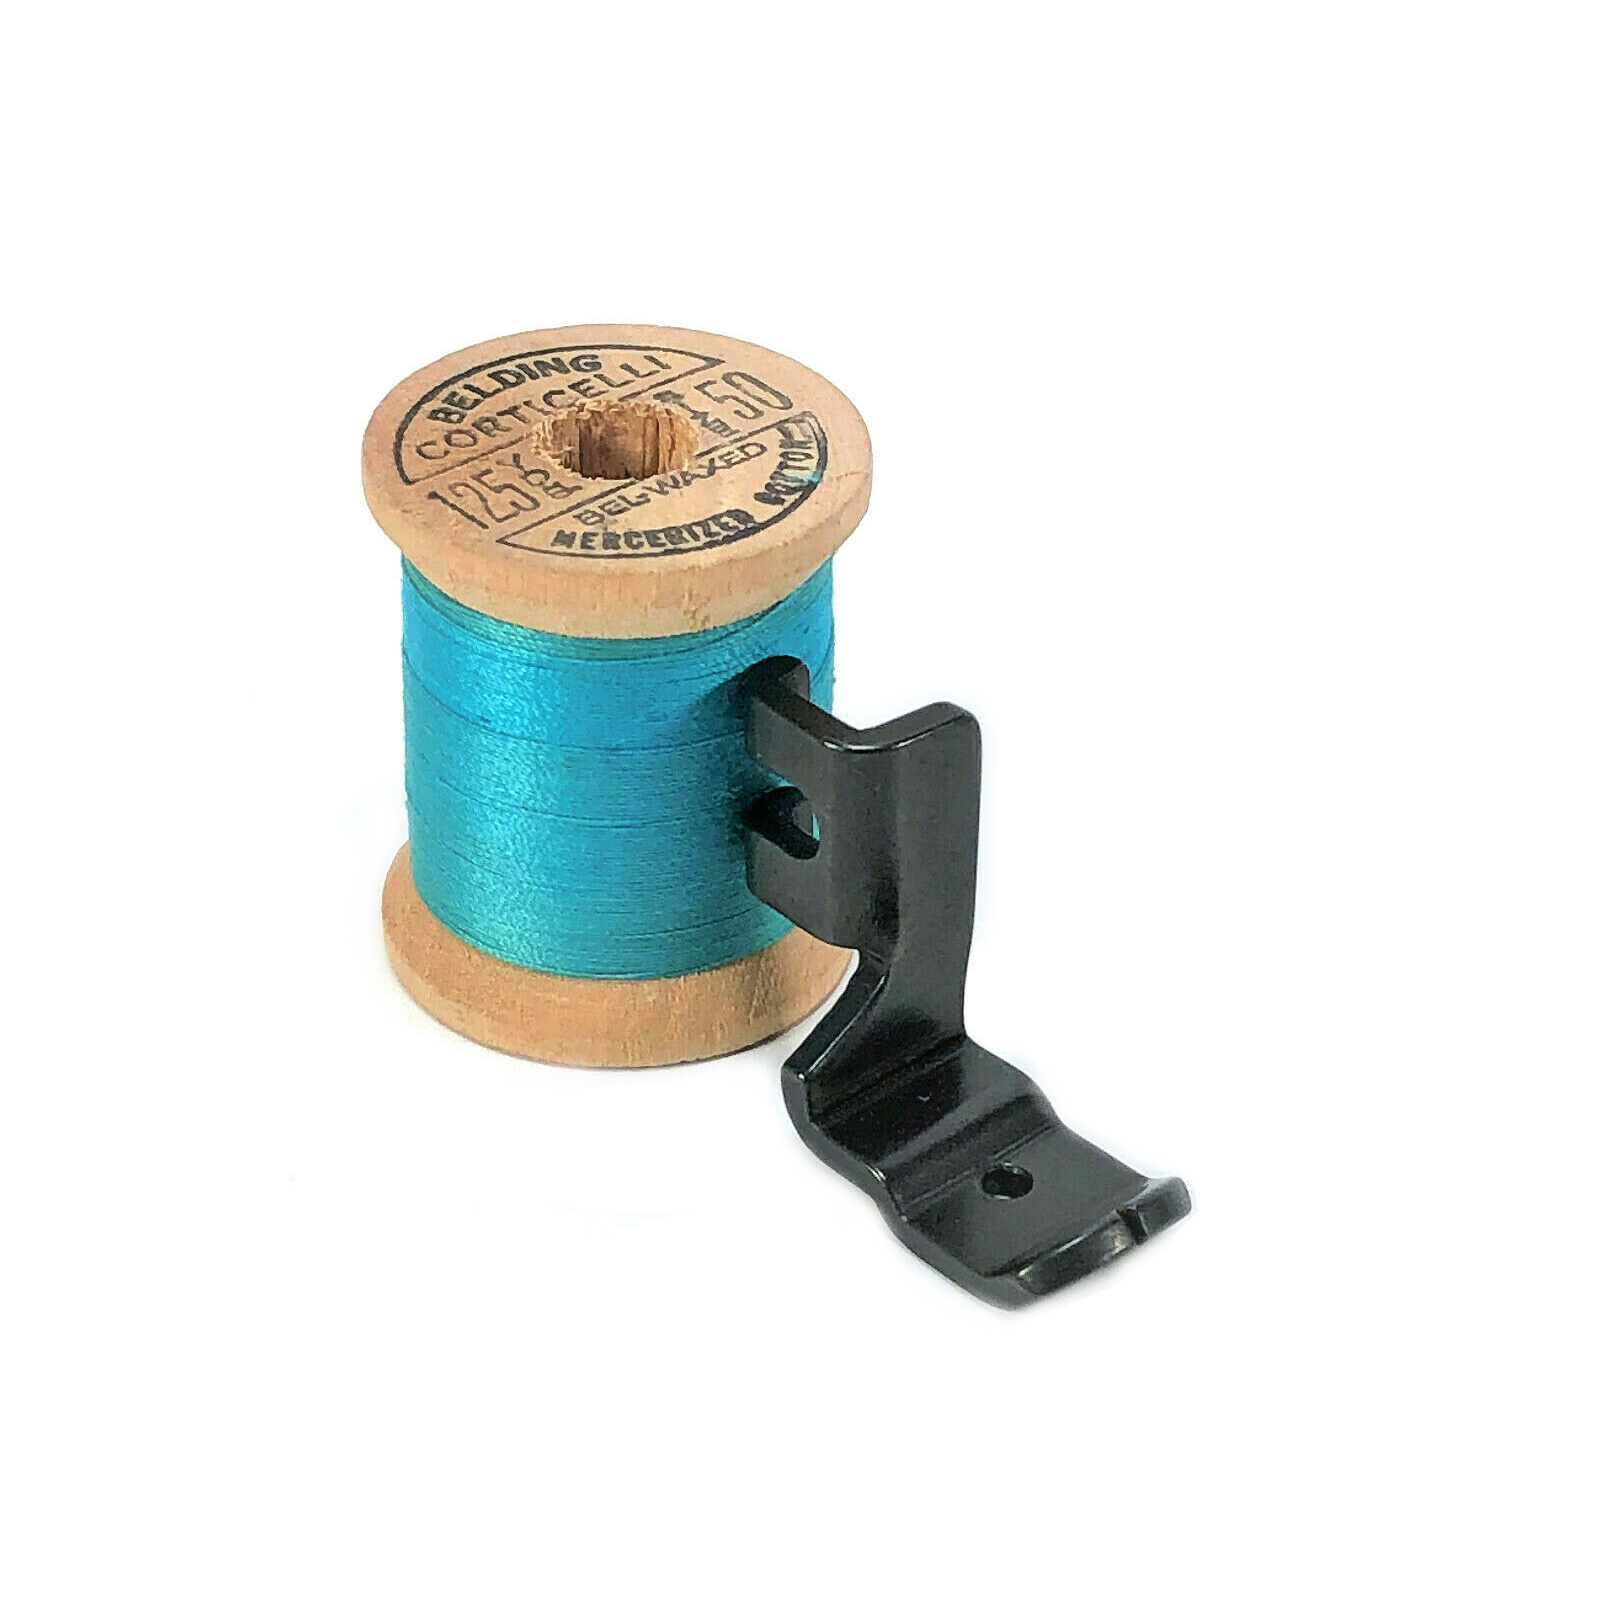 Singer Sewing Machine Blackside Low Shank Rolled Hemmer Foot 5/64 Simanco  120855 B